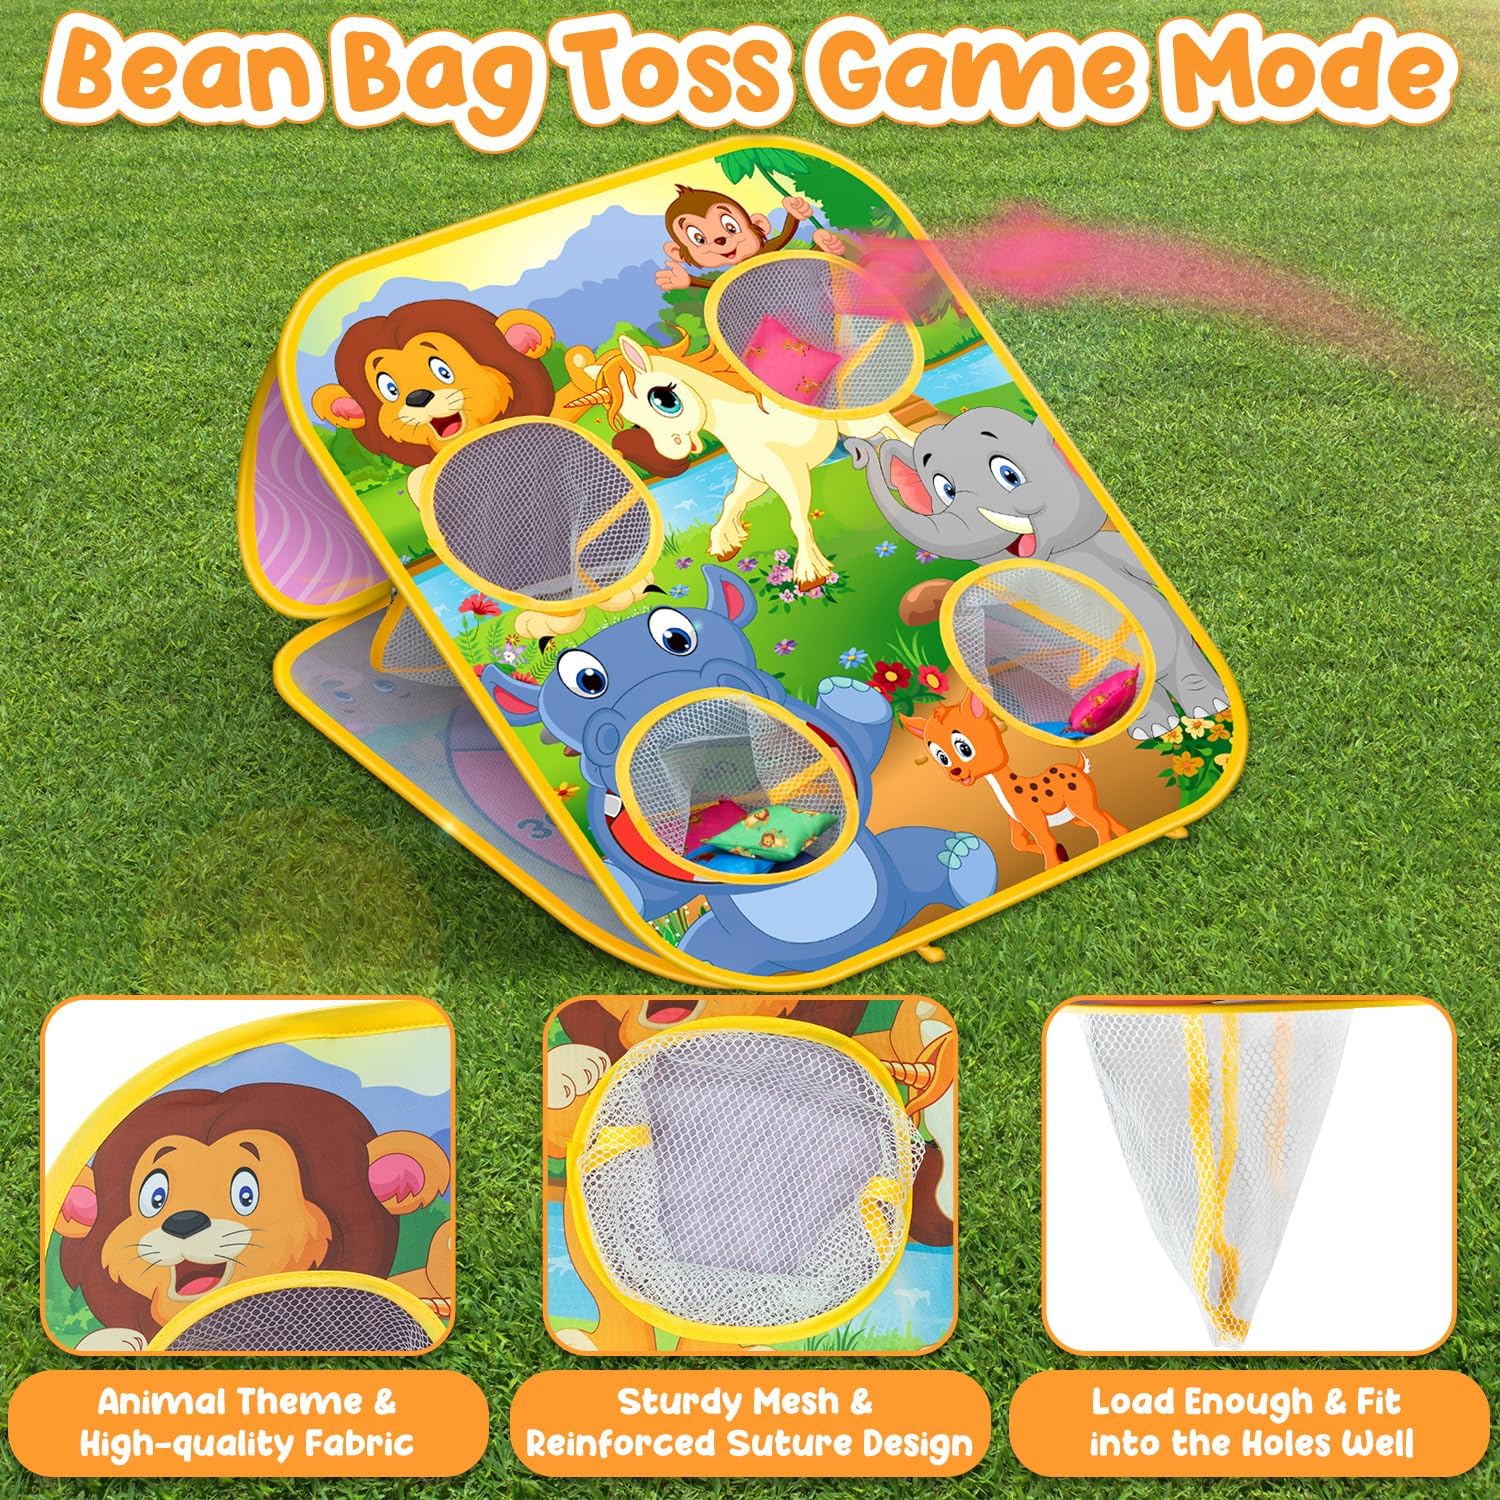 ETNA Toys 2-in-1 Bean Bag Toss & Target Game, 26 Piece Set